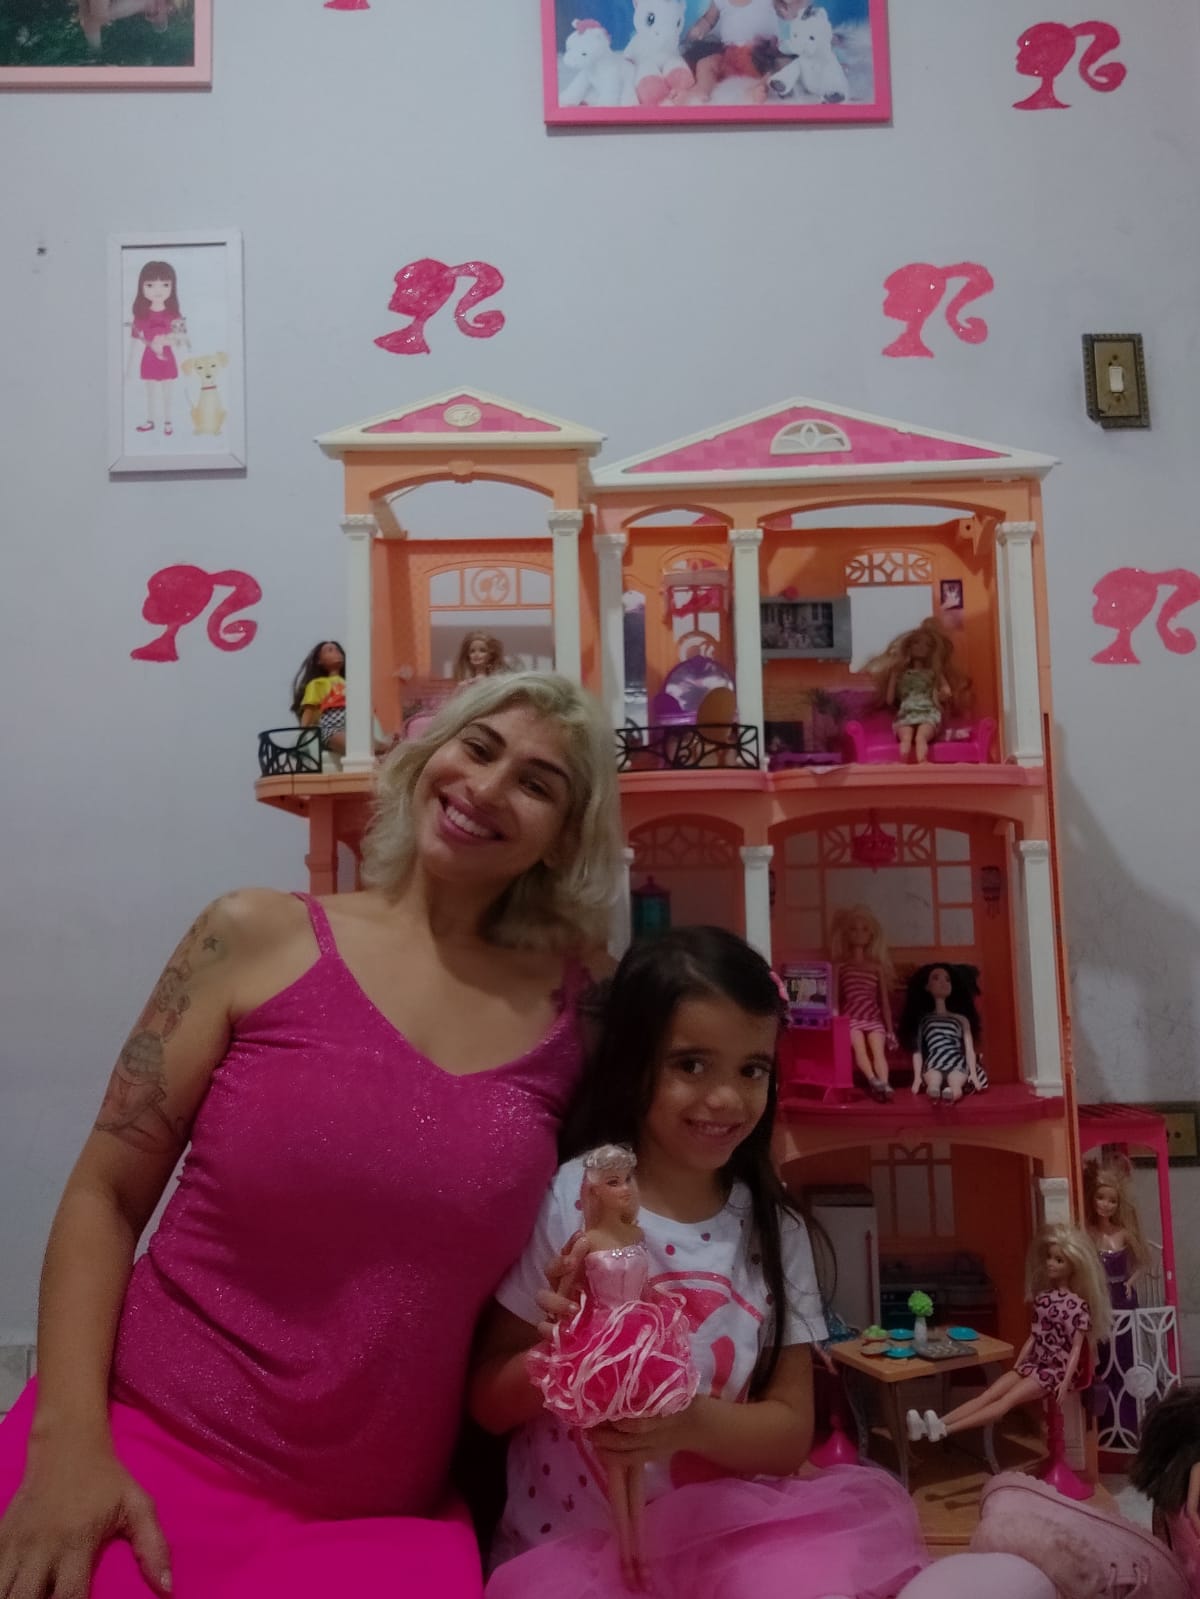 Mãe registra filha com o nome 'Barbie' em homenagem à boneca - Paulista FM